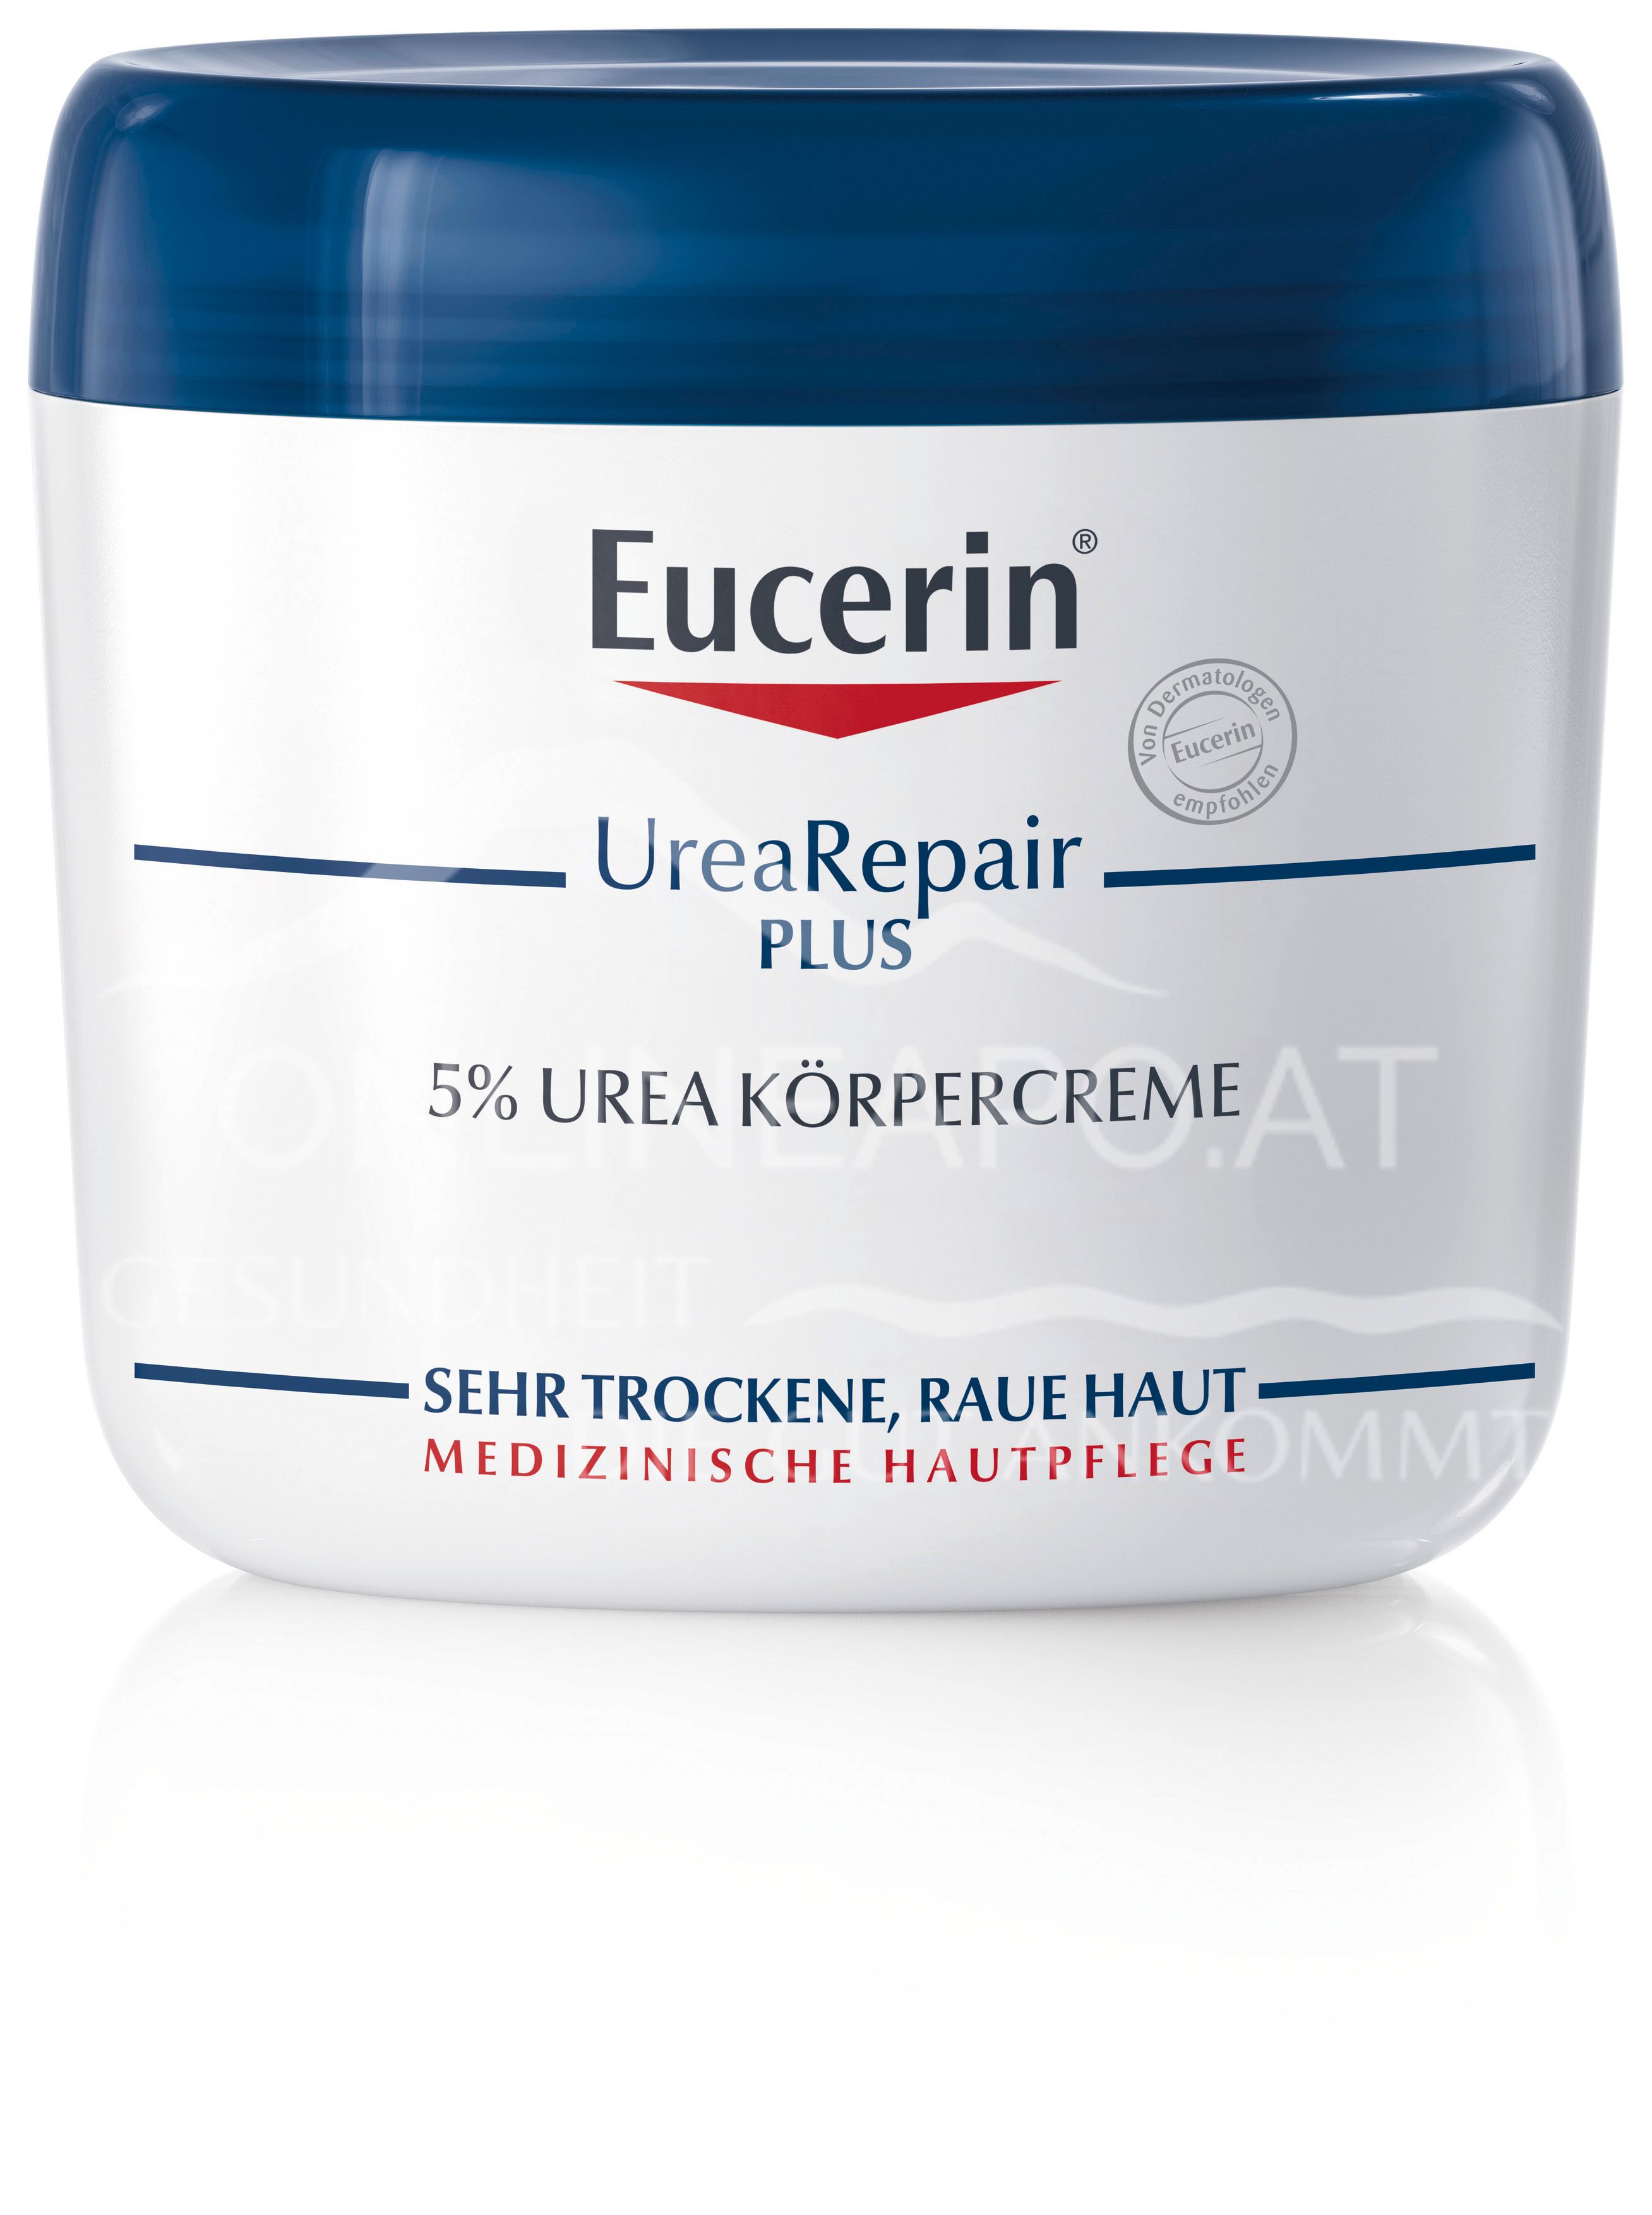 Eucerin® UreaRepair PLUS 5% Urea Körpercreme